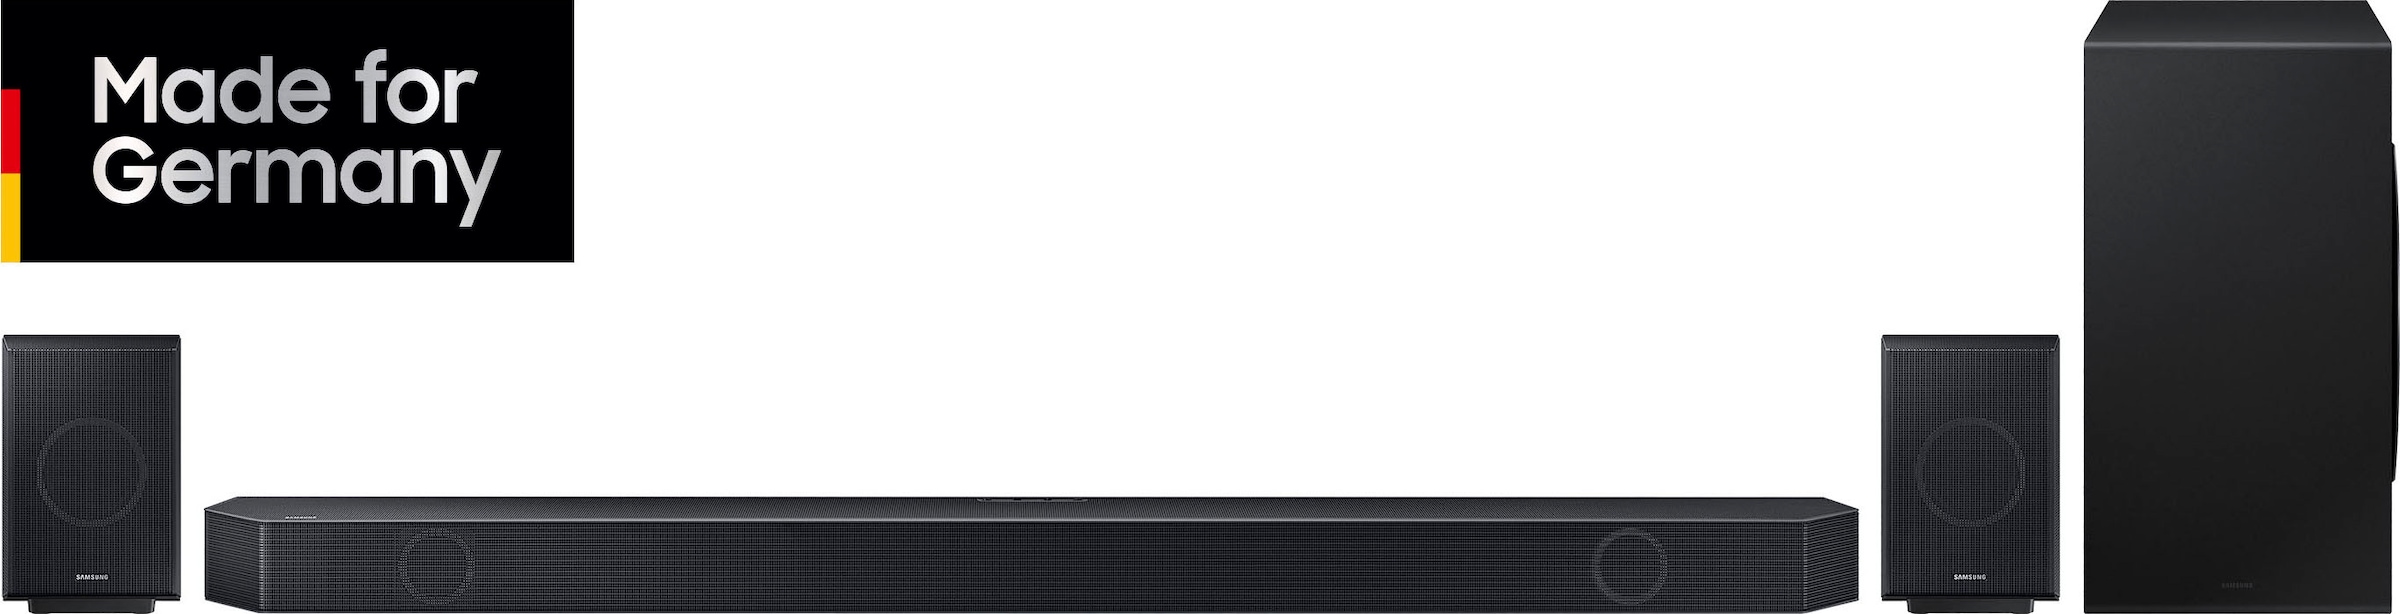 Samsung Soundbar »HW-Q995GC«, Gratis dazu:48 Mon.Garantie im Wert von 39,99€; 4.0.2 Rücklautsprecher